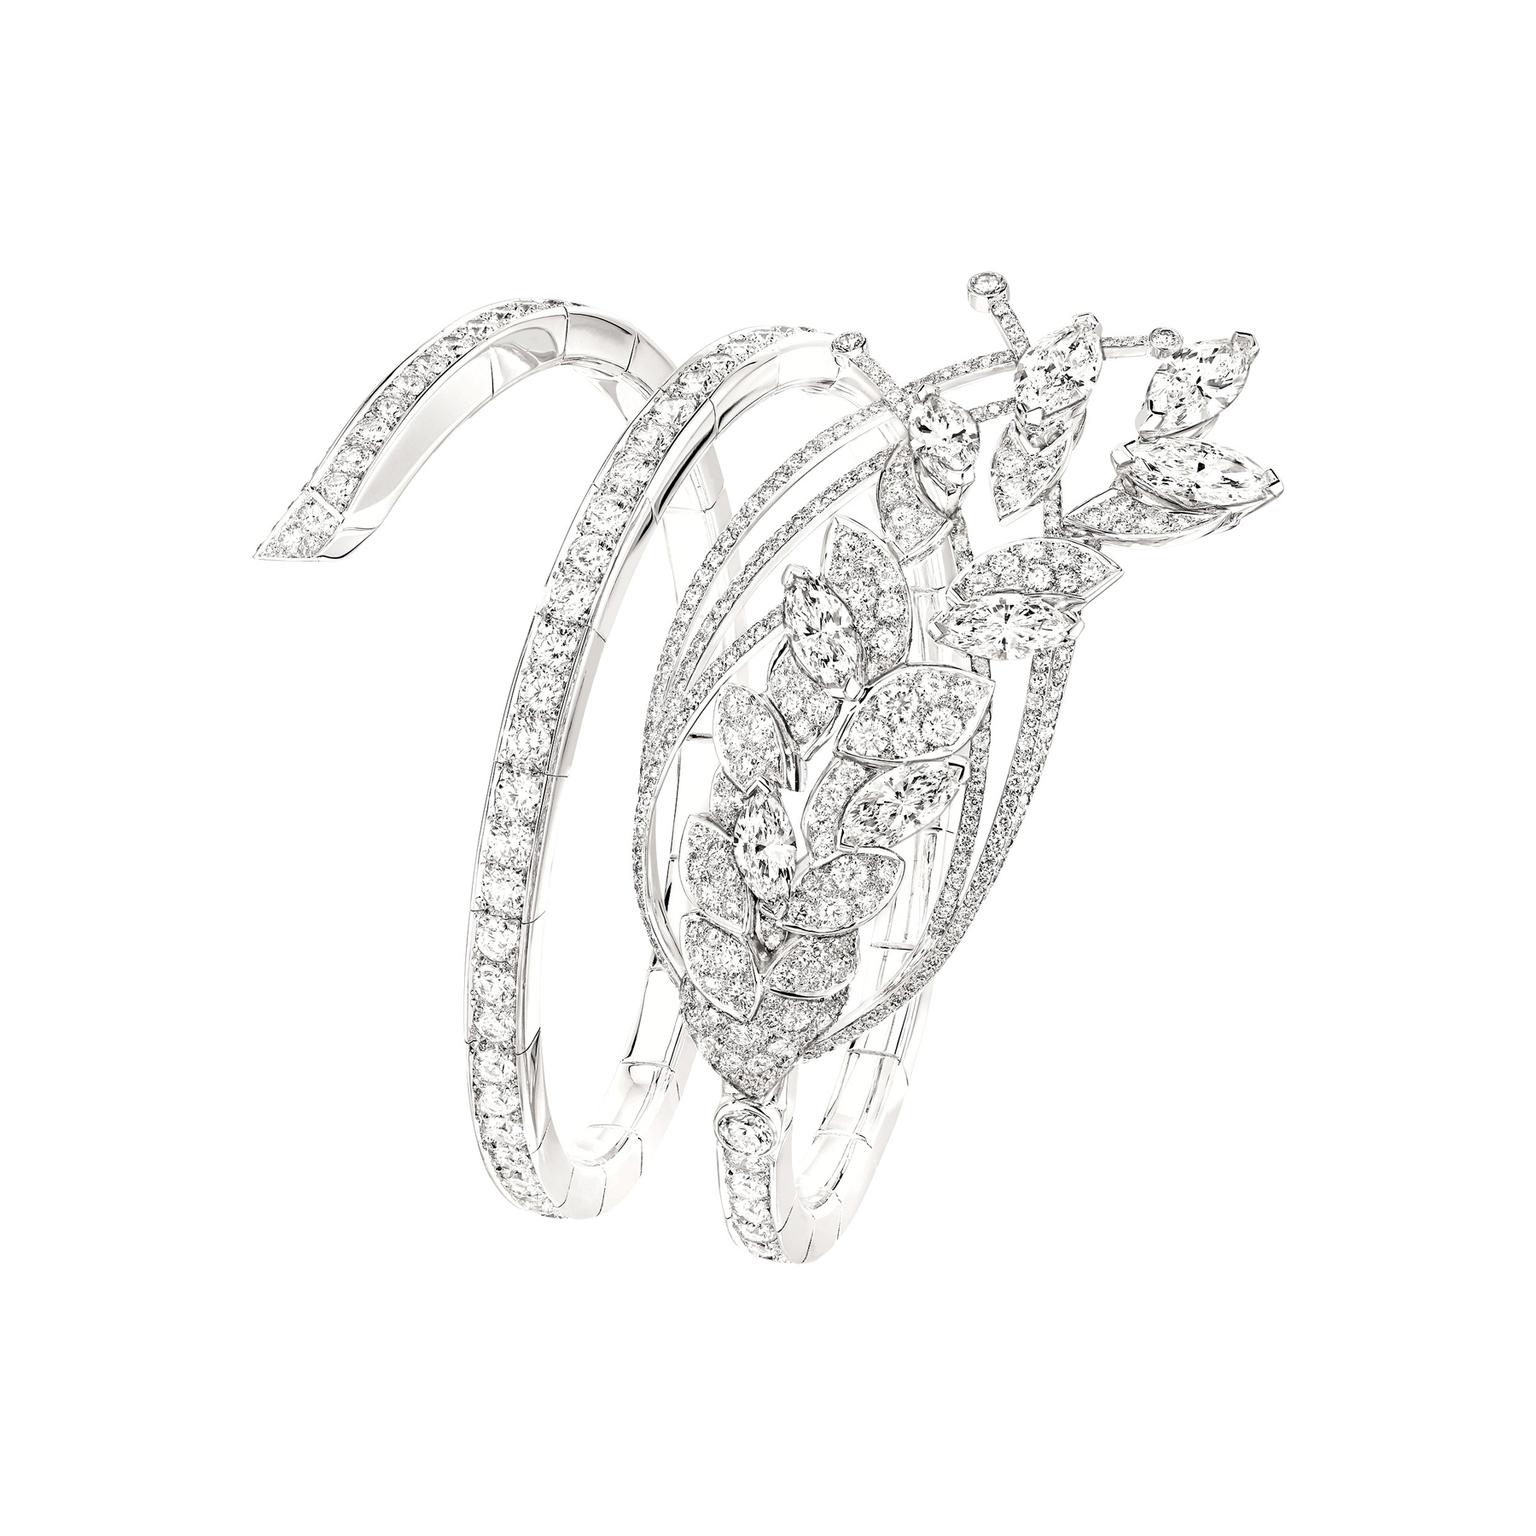 Chanel Les Blés Legende de Ble diamond bracelet